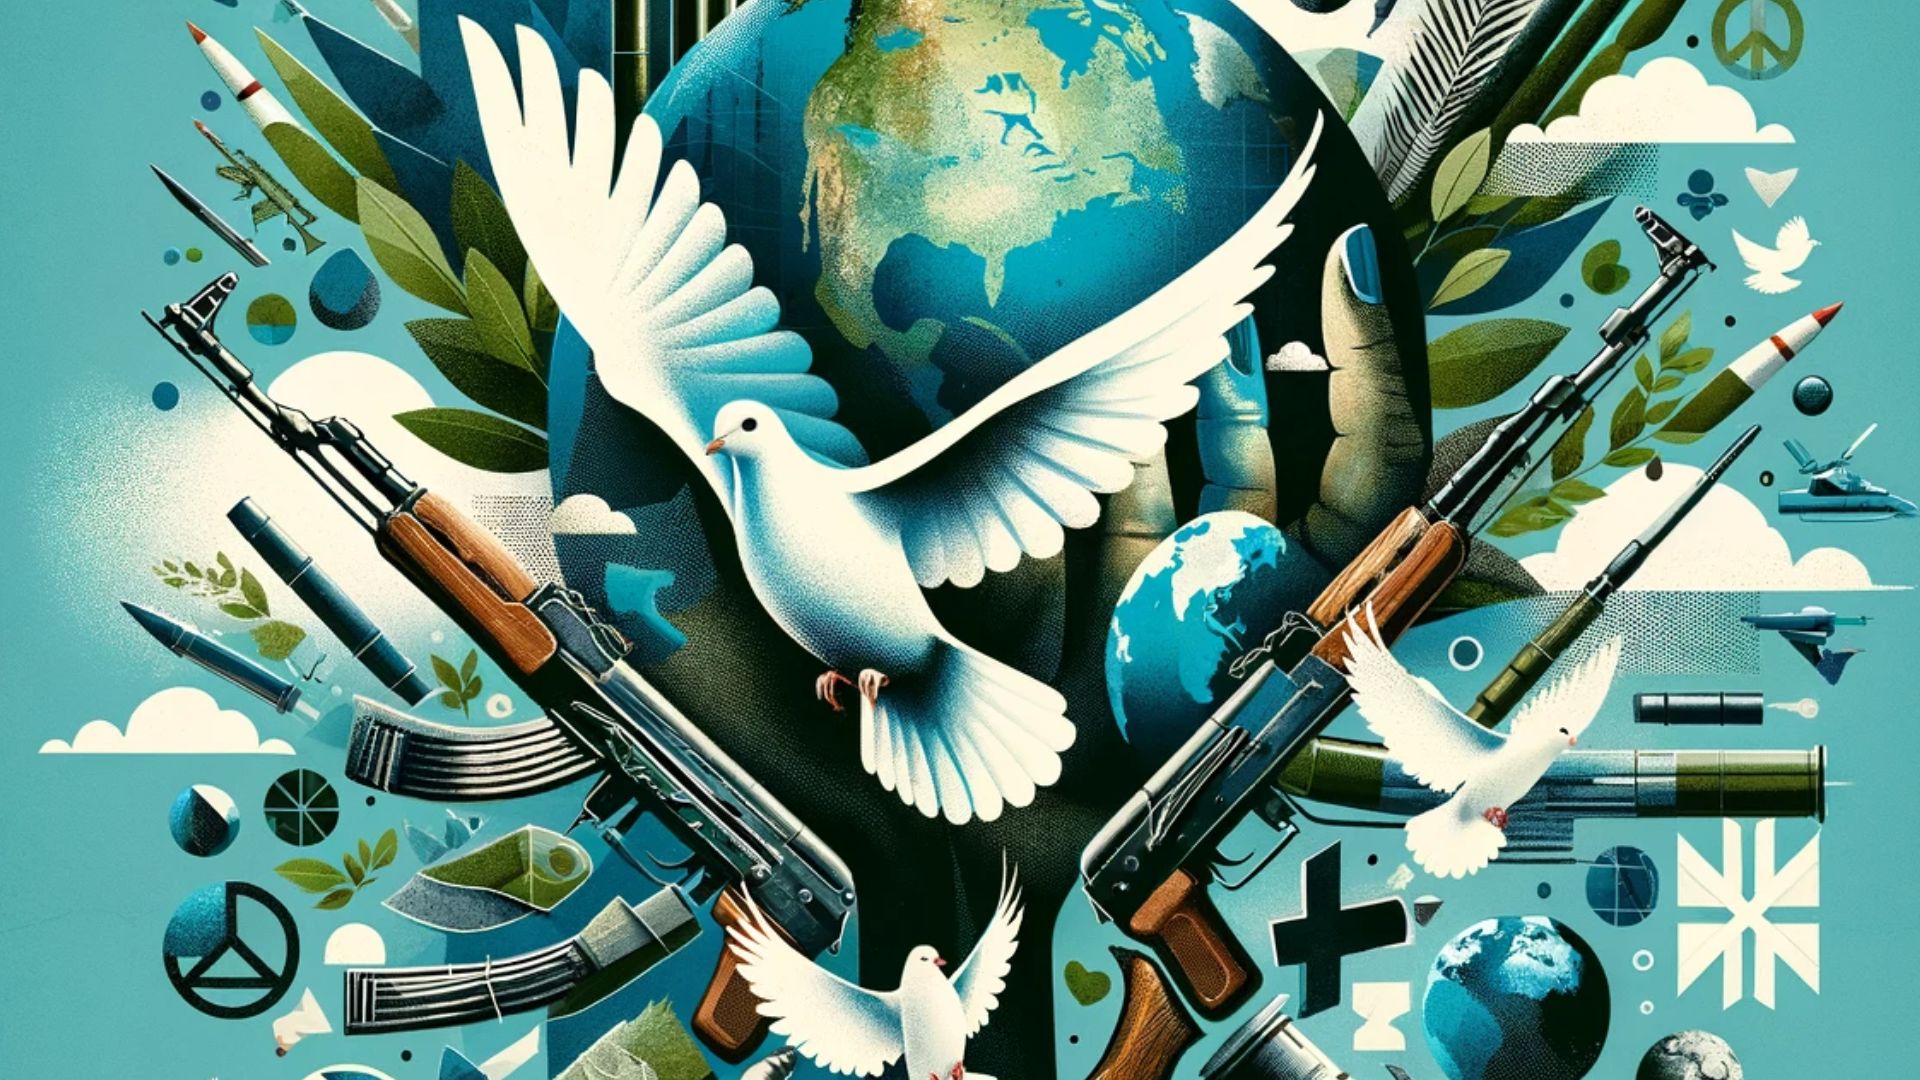 Disarmament Dialogues